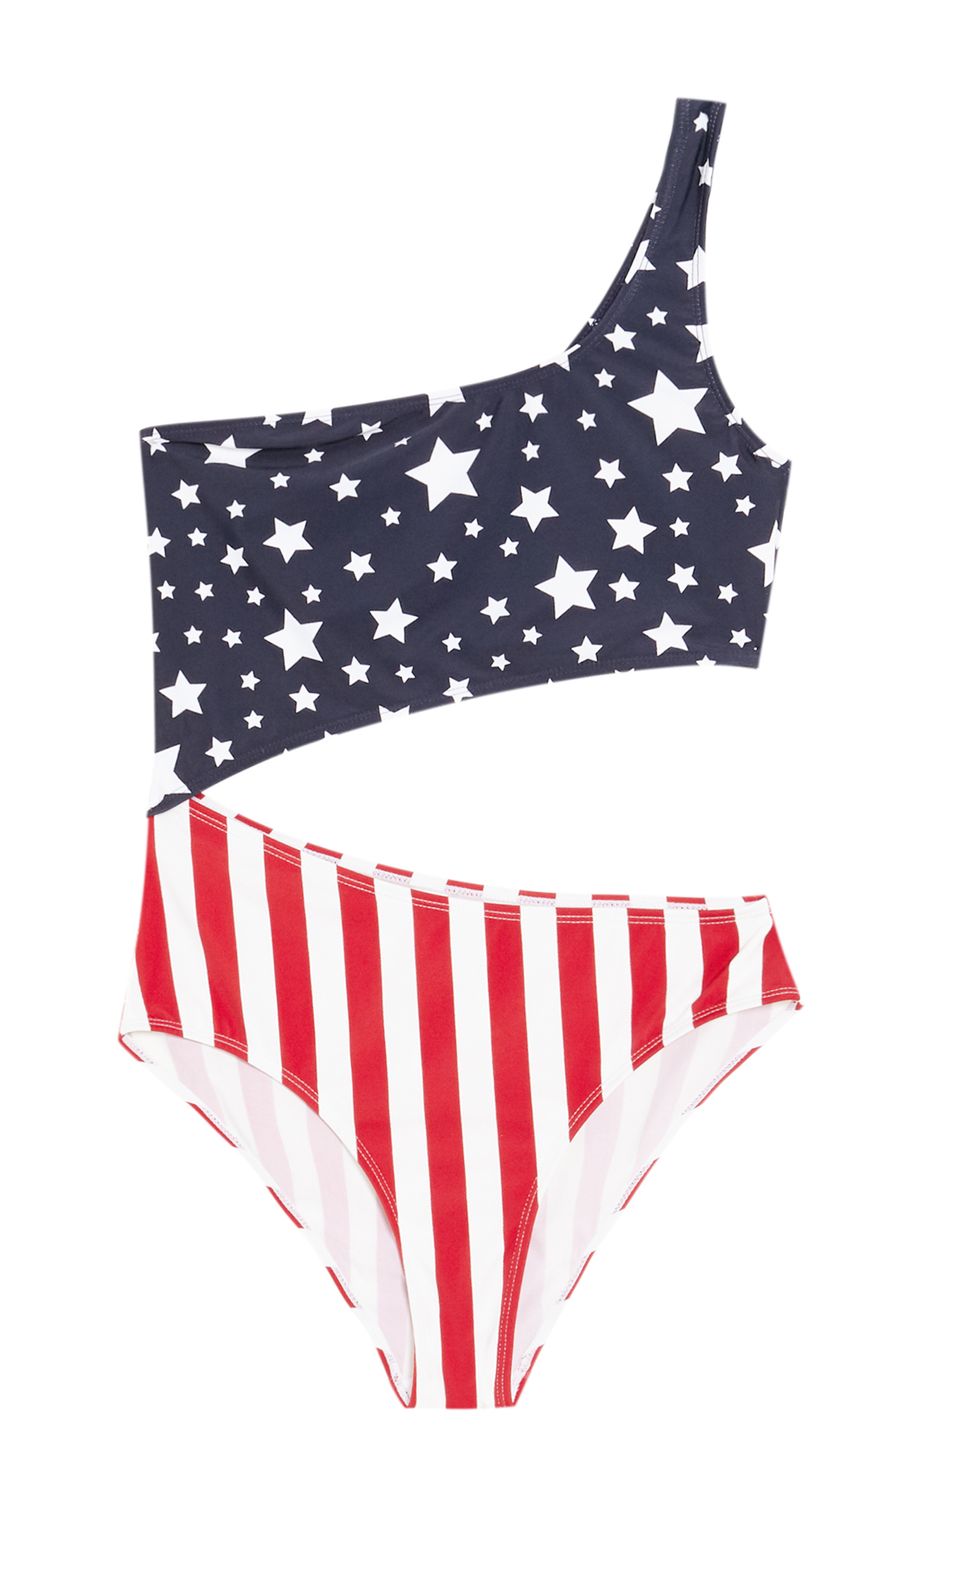 Festeggia il 4 luglio, la festa di indipendenza americana, in costume da bagno con i bikini e i costumi interi con la bandiera americana: l'emblema del sogno che diventa realtà è a portata di click.